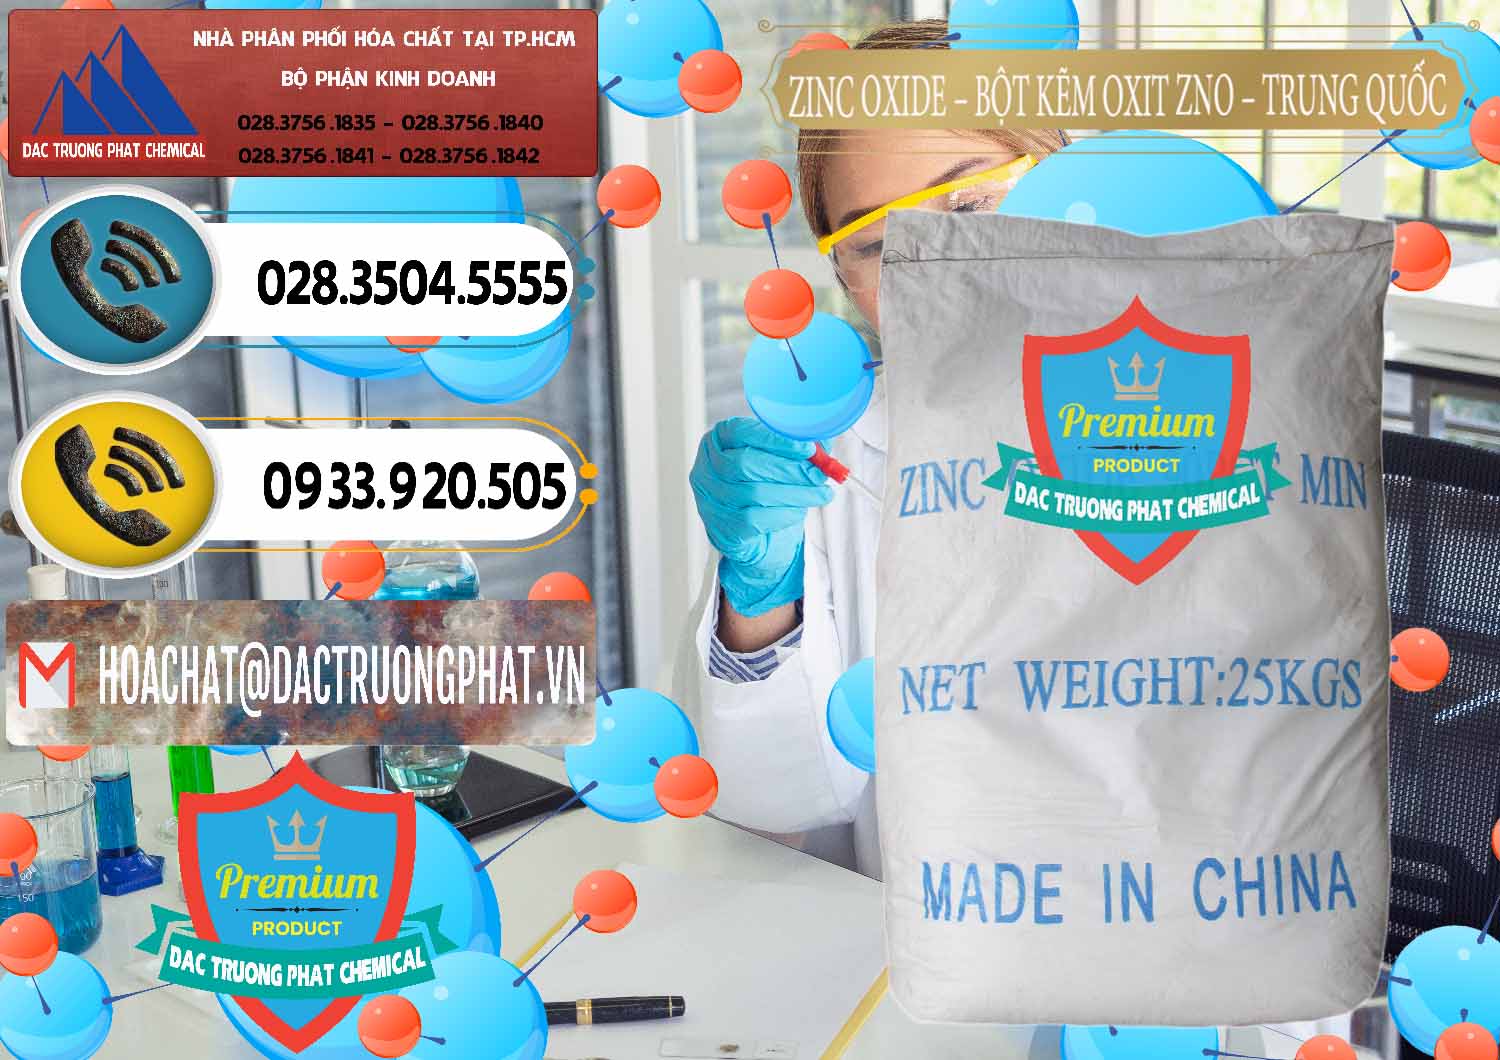 Cty cung cấp ( bán ) Zinc Oxide - Bột Kẽm Oxit ZNO Trung Quốc China - 0182 - Chuyên bán - cung cấp hóa chất tại TP.HCM - hoachatdetnhuom.vn